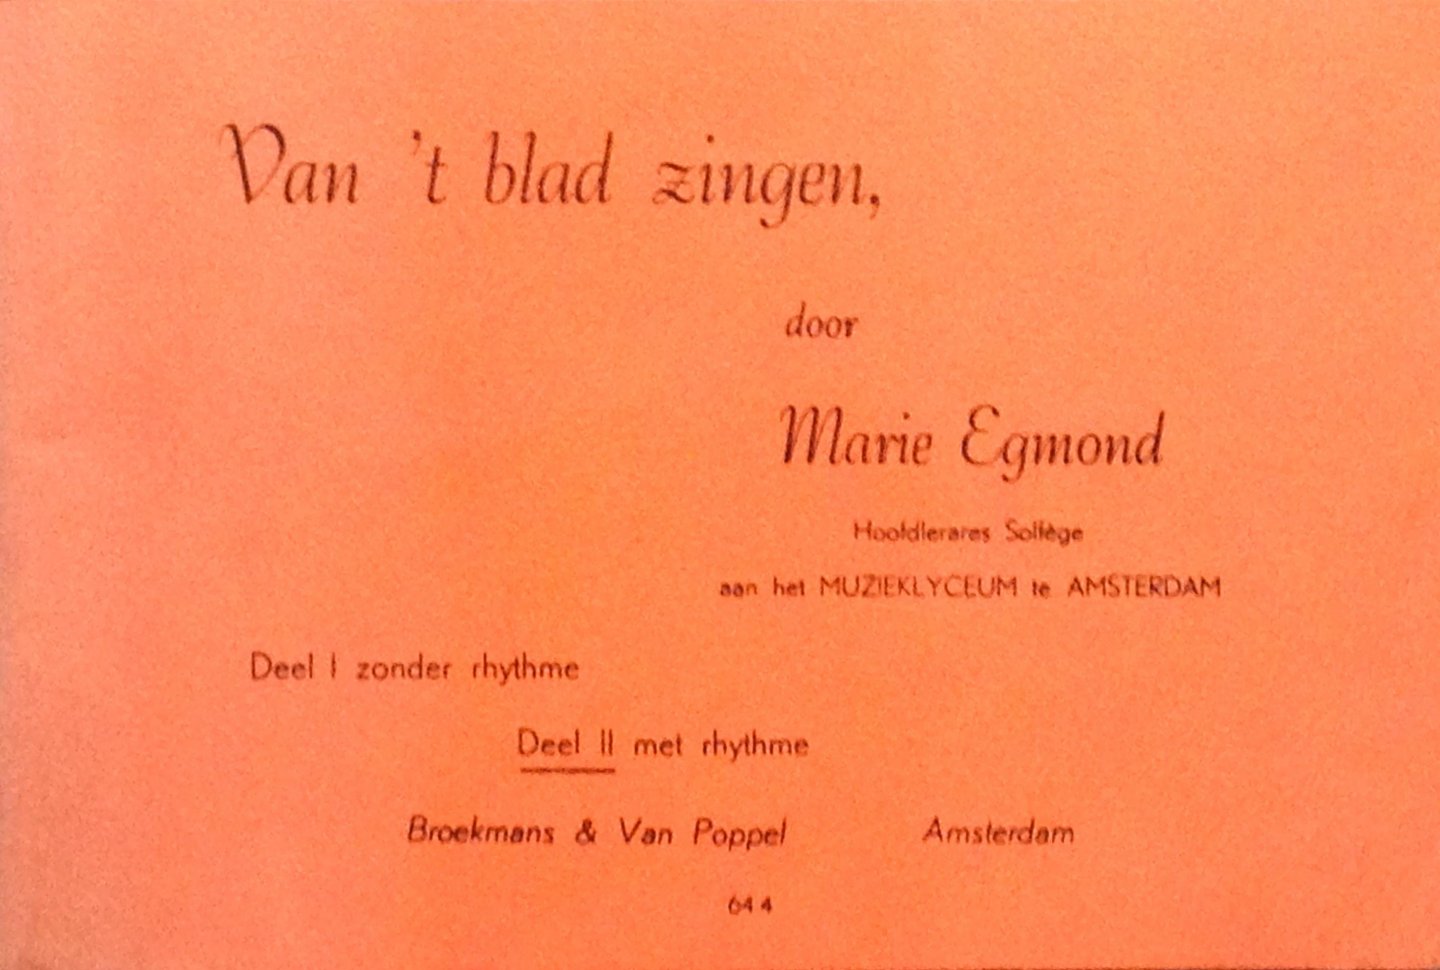 Egmond, Marie - Van 't blad zingen - Deel II met rhythme